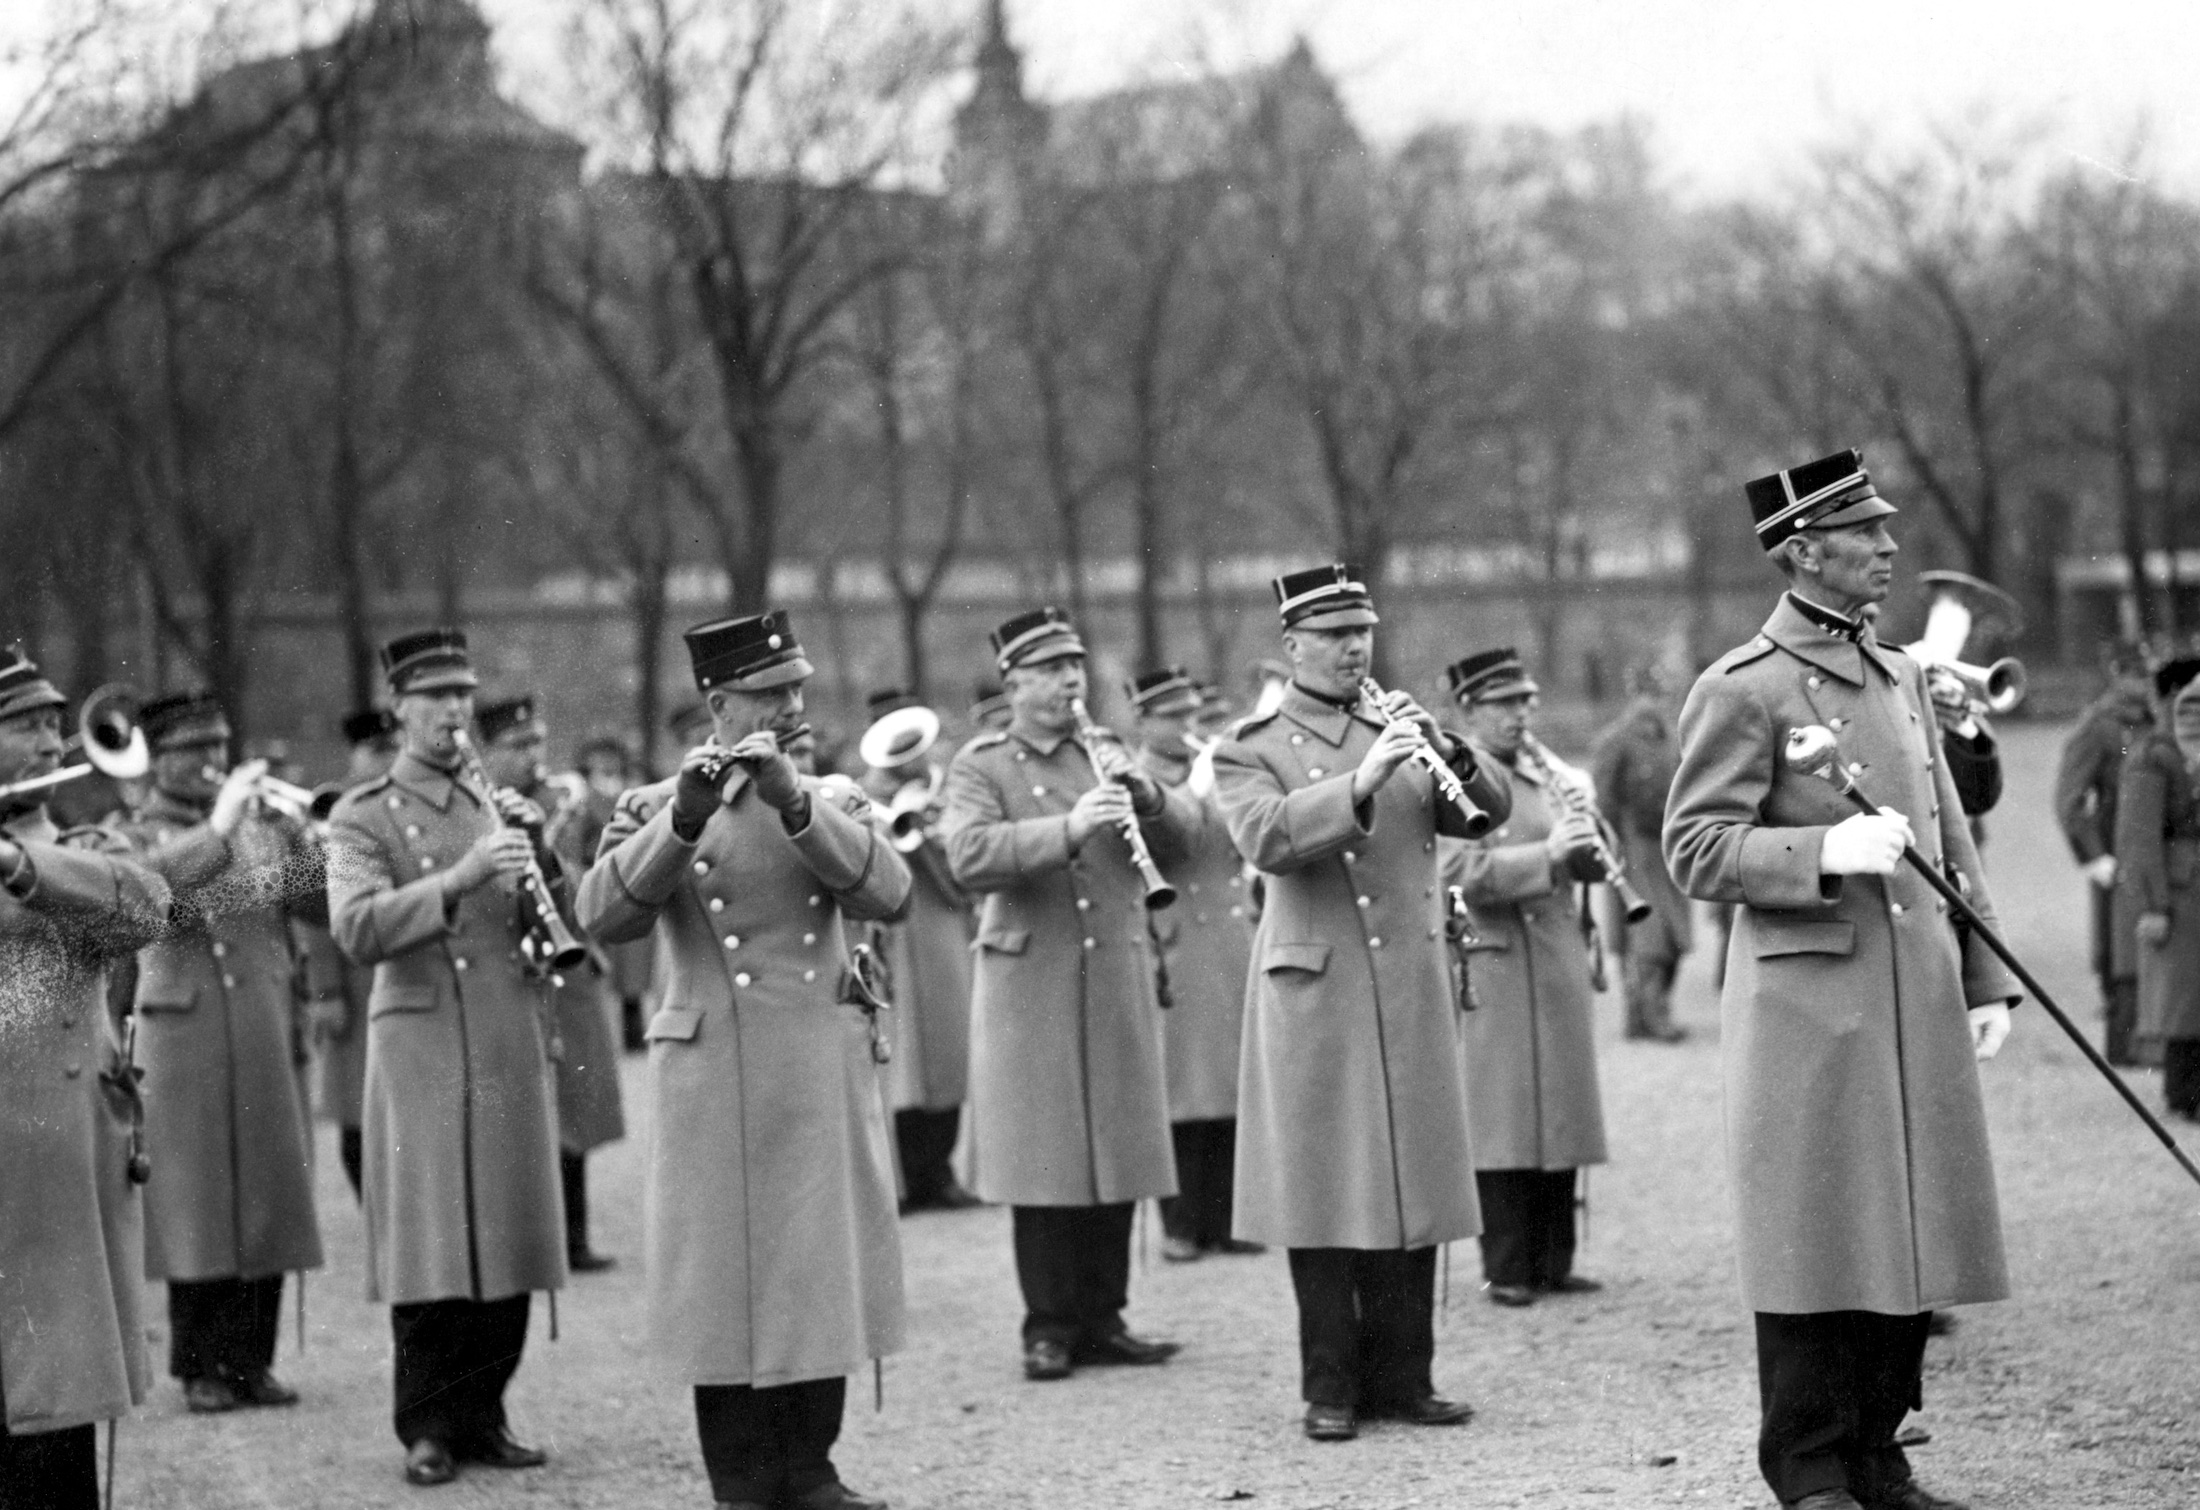 Vi ser en leder og korpset bak i eldre uniformer, som spiller på ulike instrumenter.